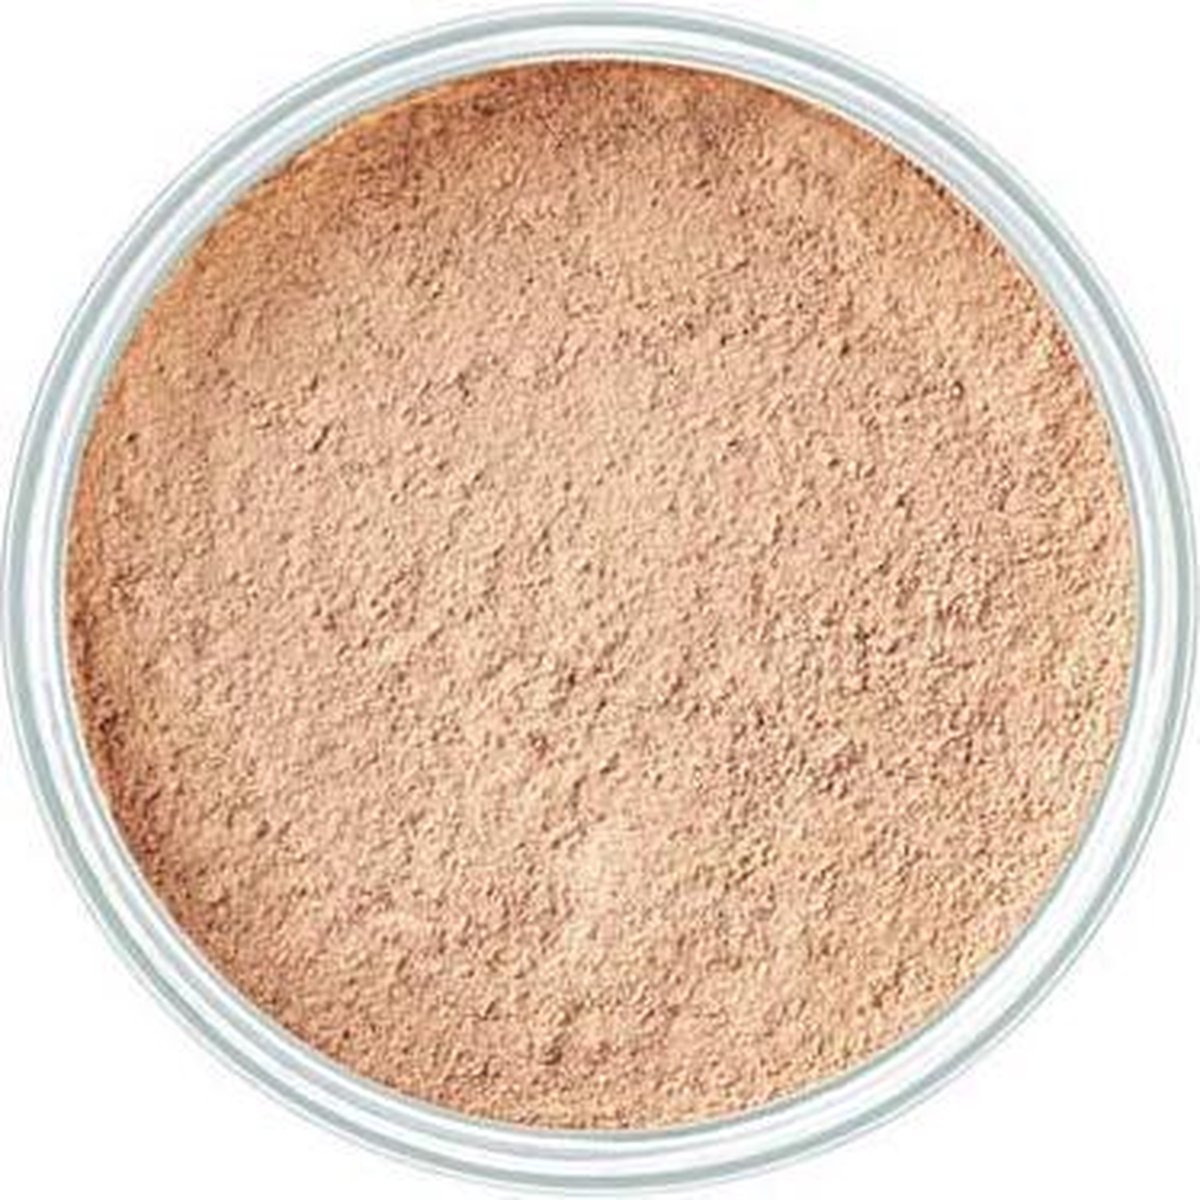 Artdeco mineral powder foundation 2 Natural Beige - Artdeco Make-up